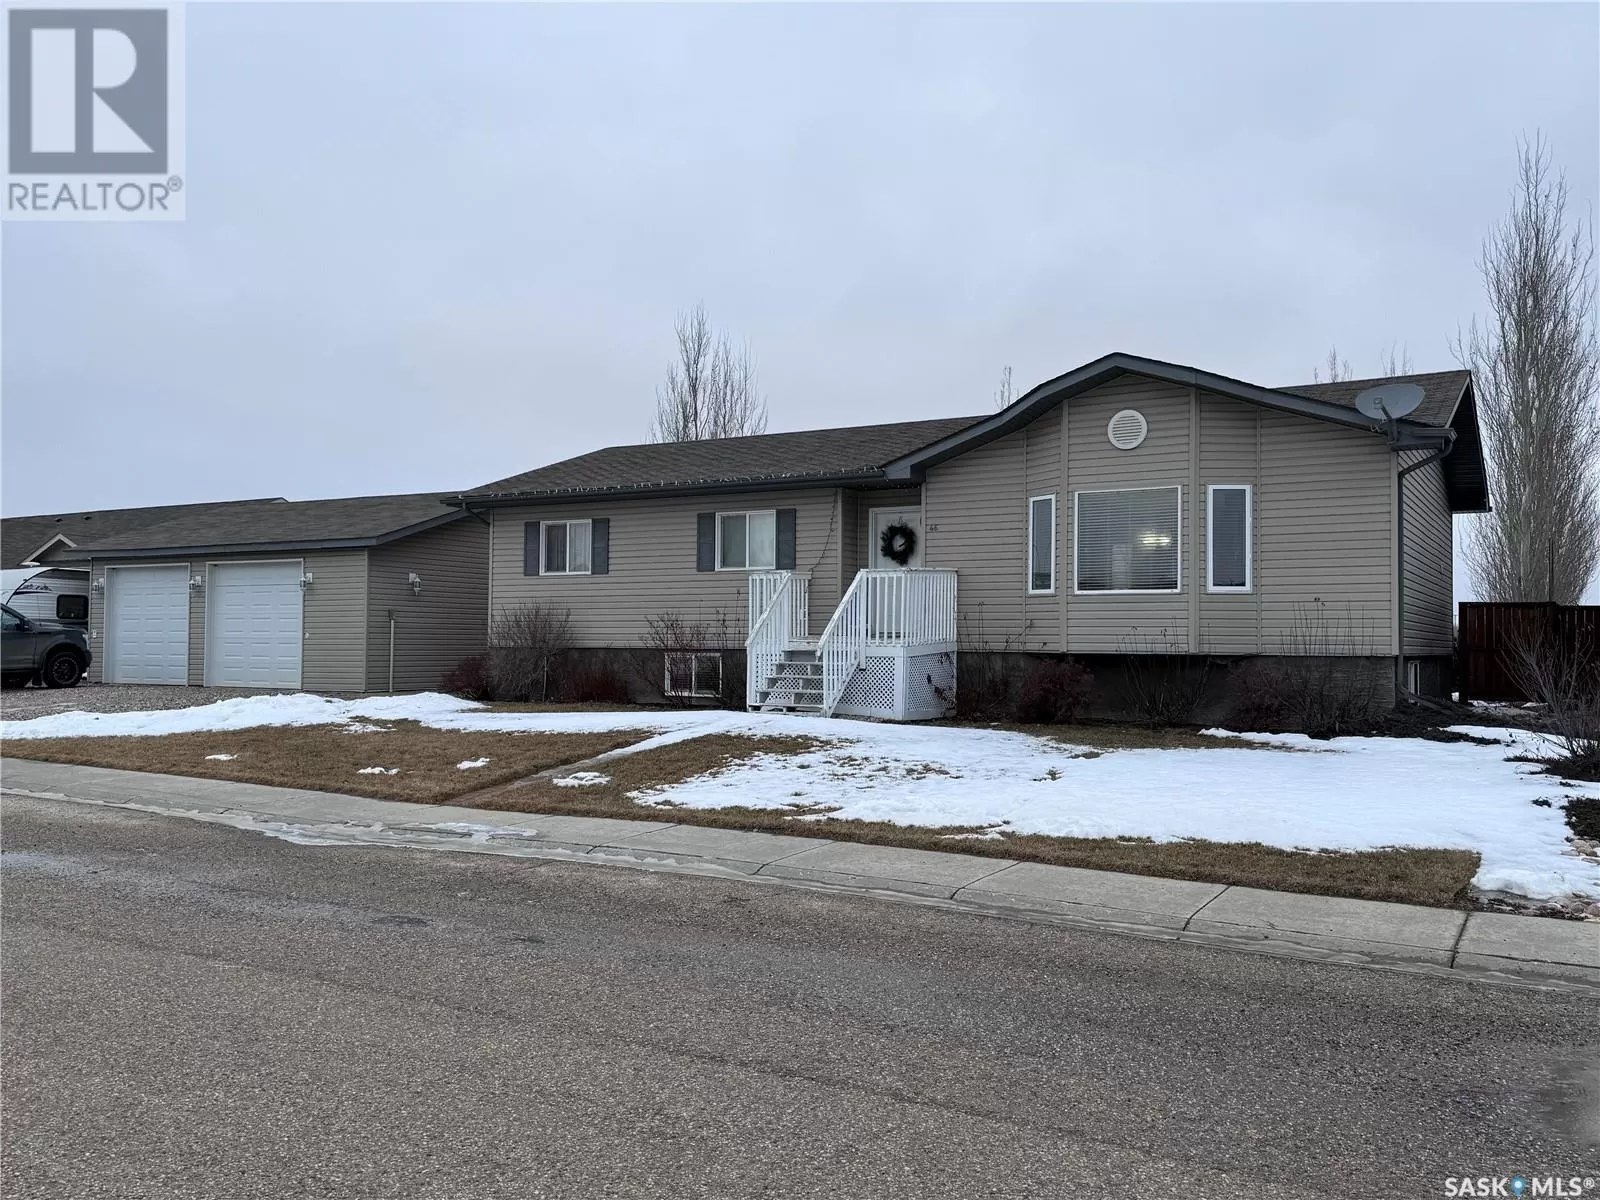 House for rent: 46 Baun Street, Lanigan, Saskatchewan S0K 2M0